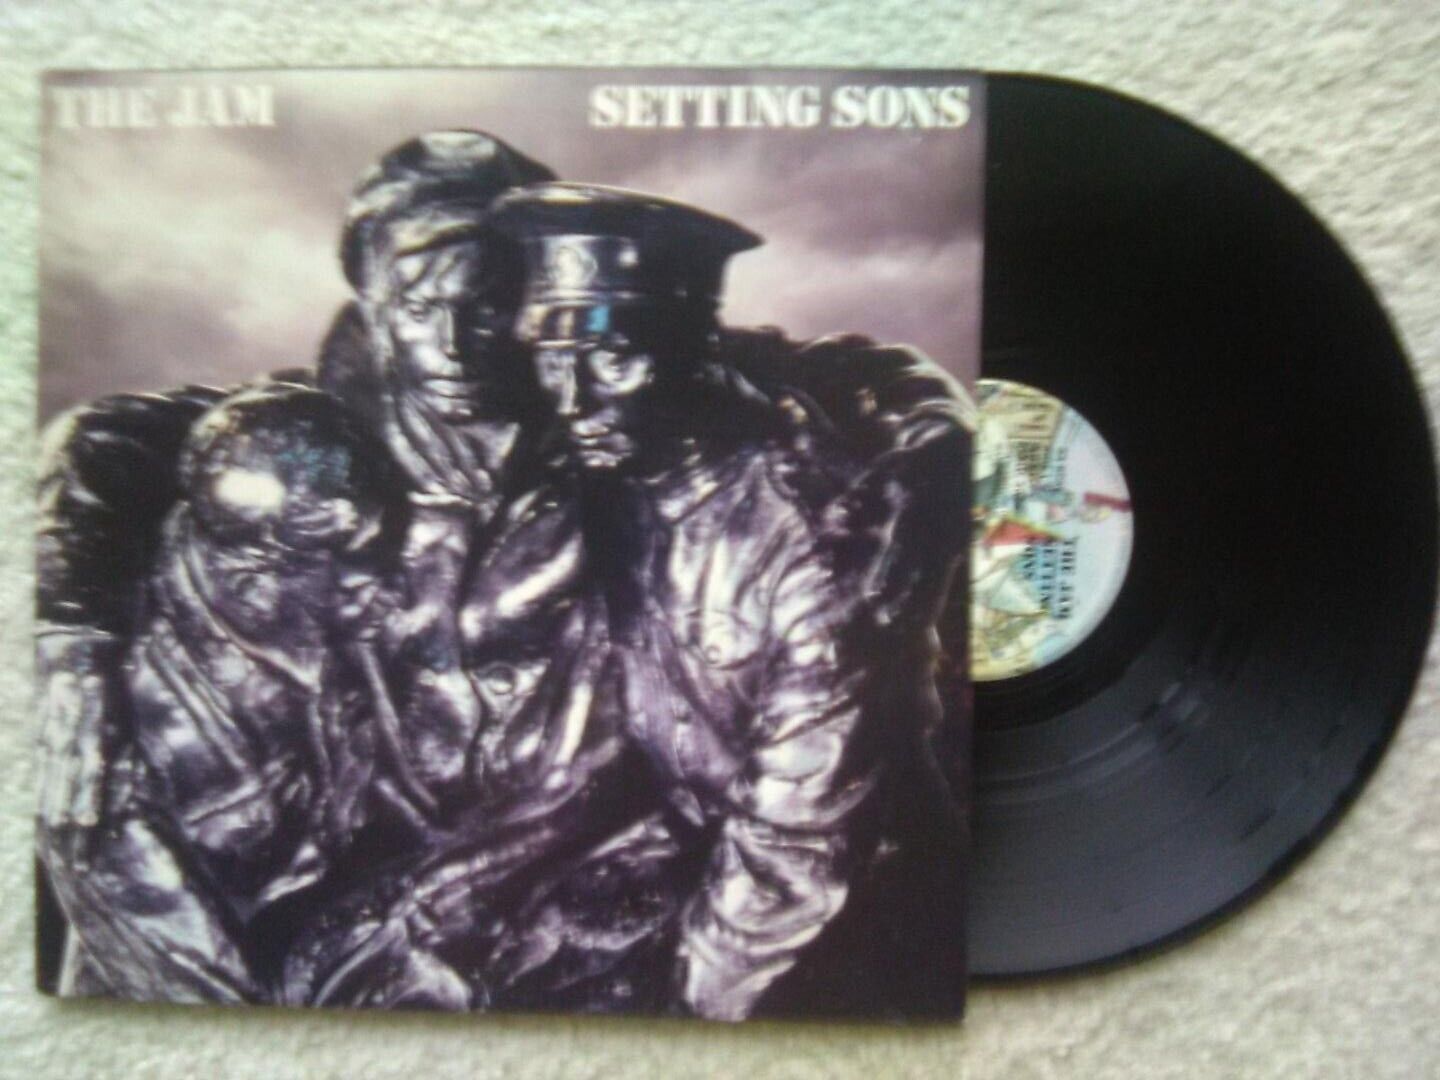 The Jam "Setting Sons" VG+/EXC 1979 Vinyl LP UK POLD-5028  w/Insert Paul Weller